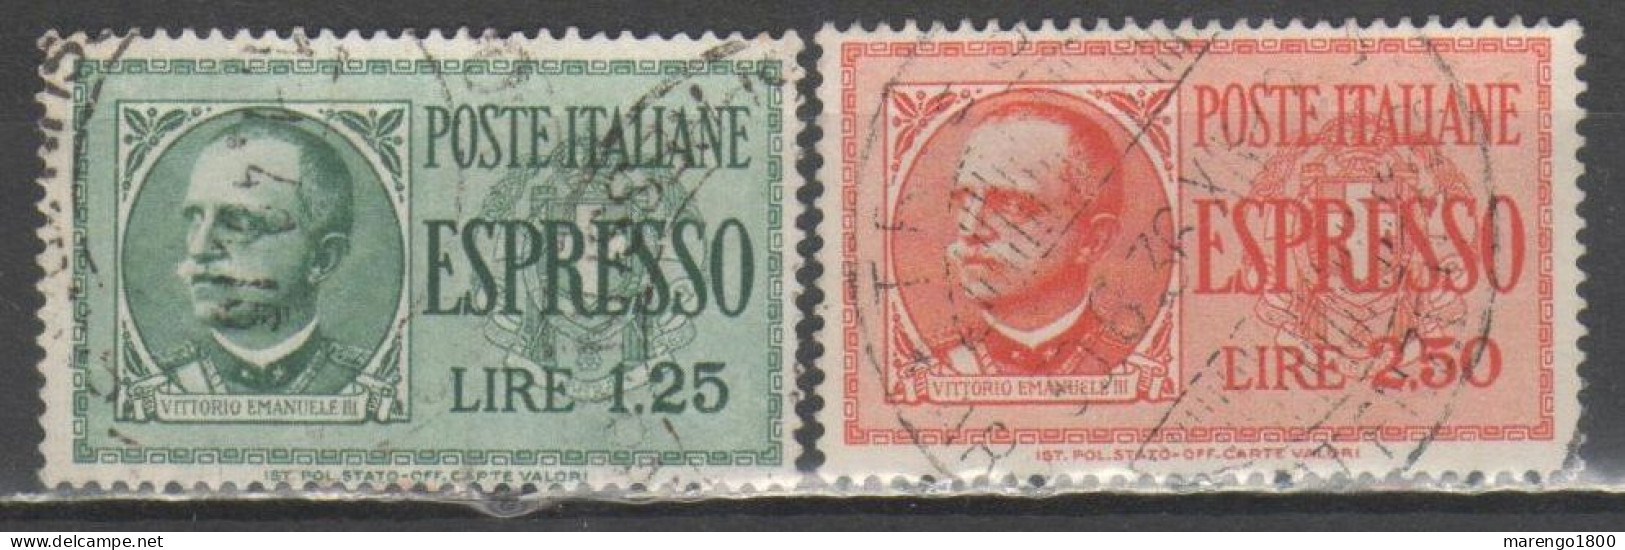 ITALIA 1932-33 - Espressi - Correo Urgente